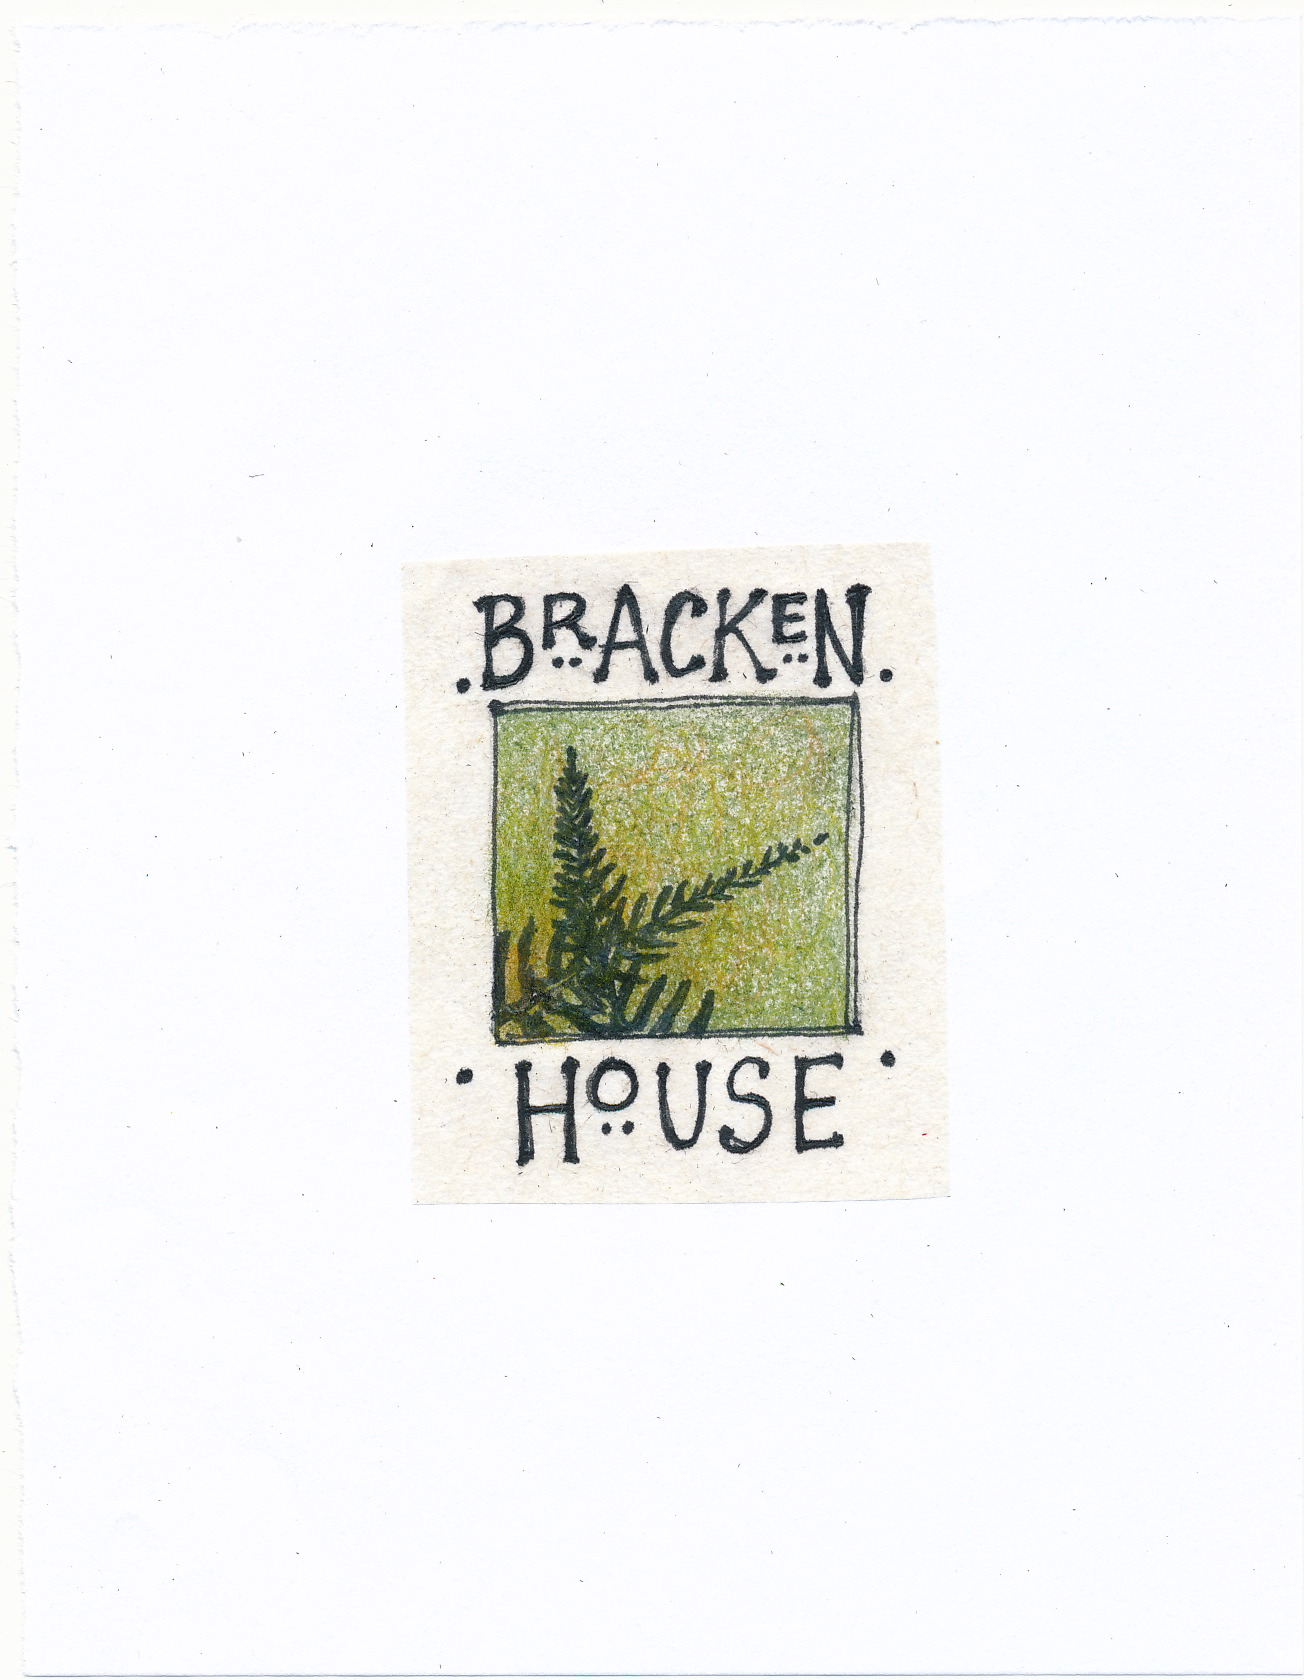 About Bracken House